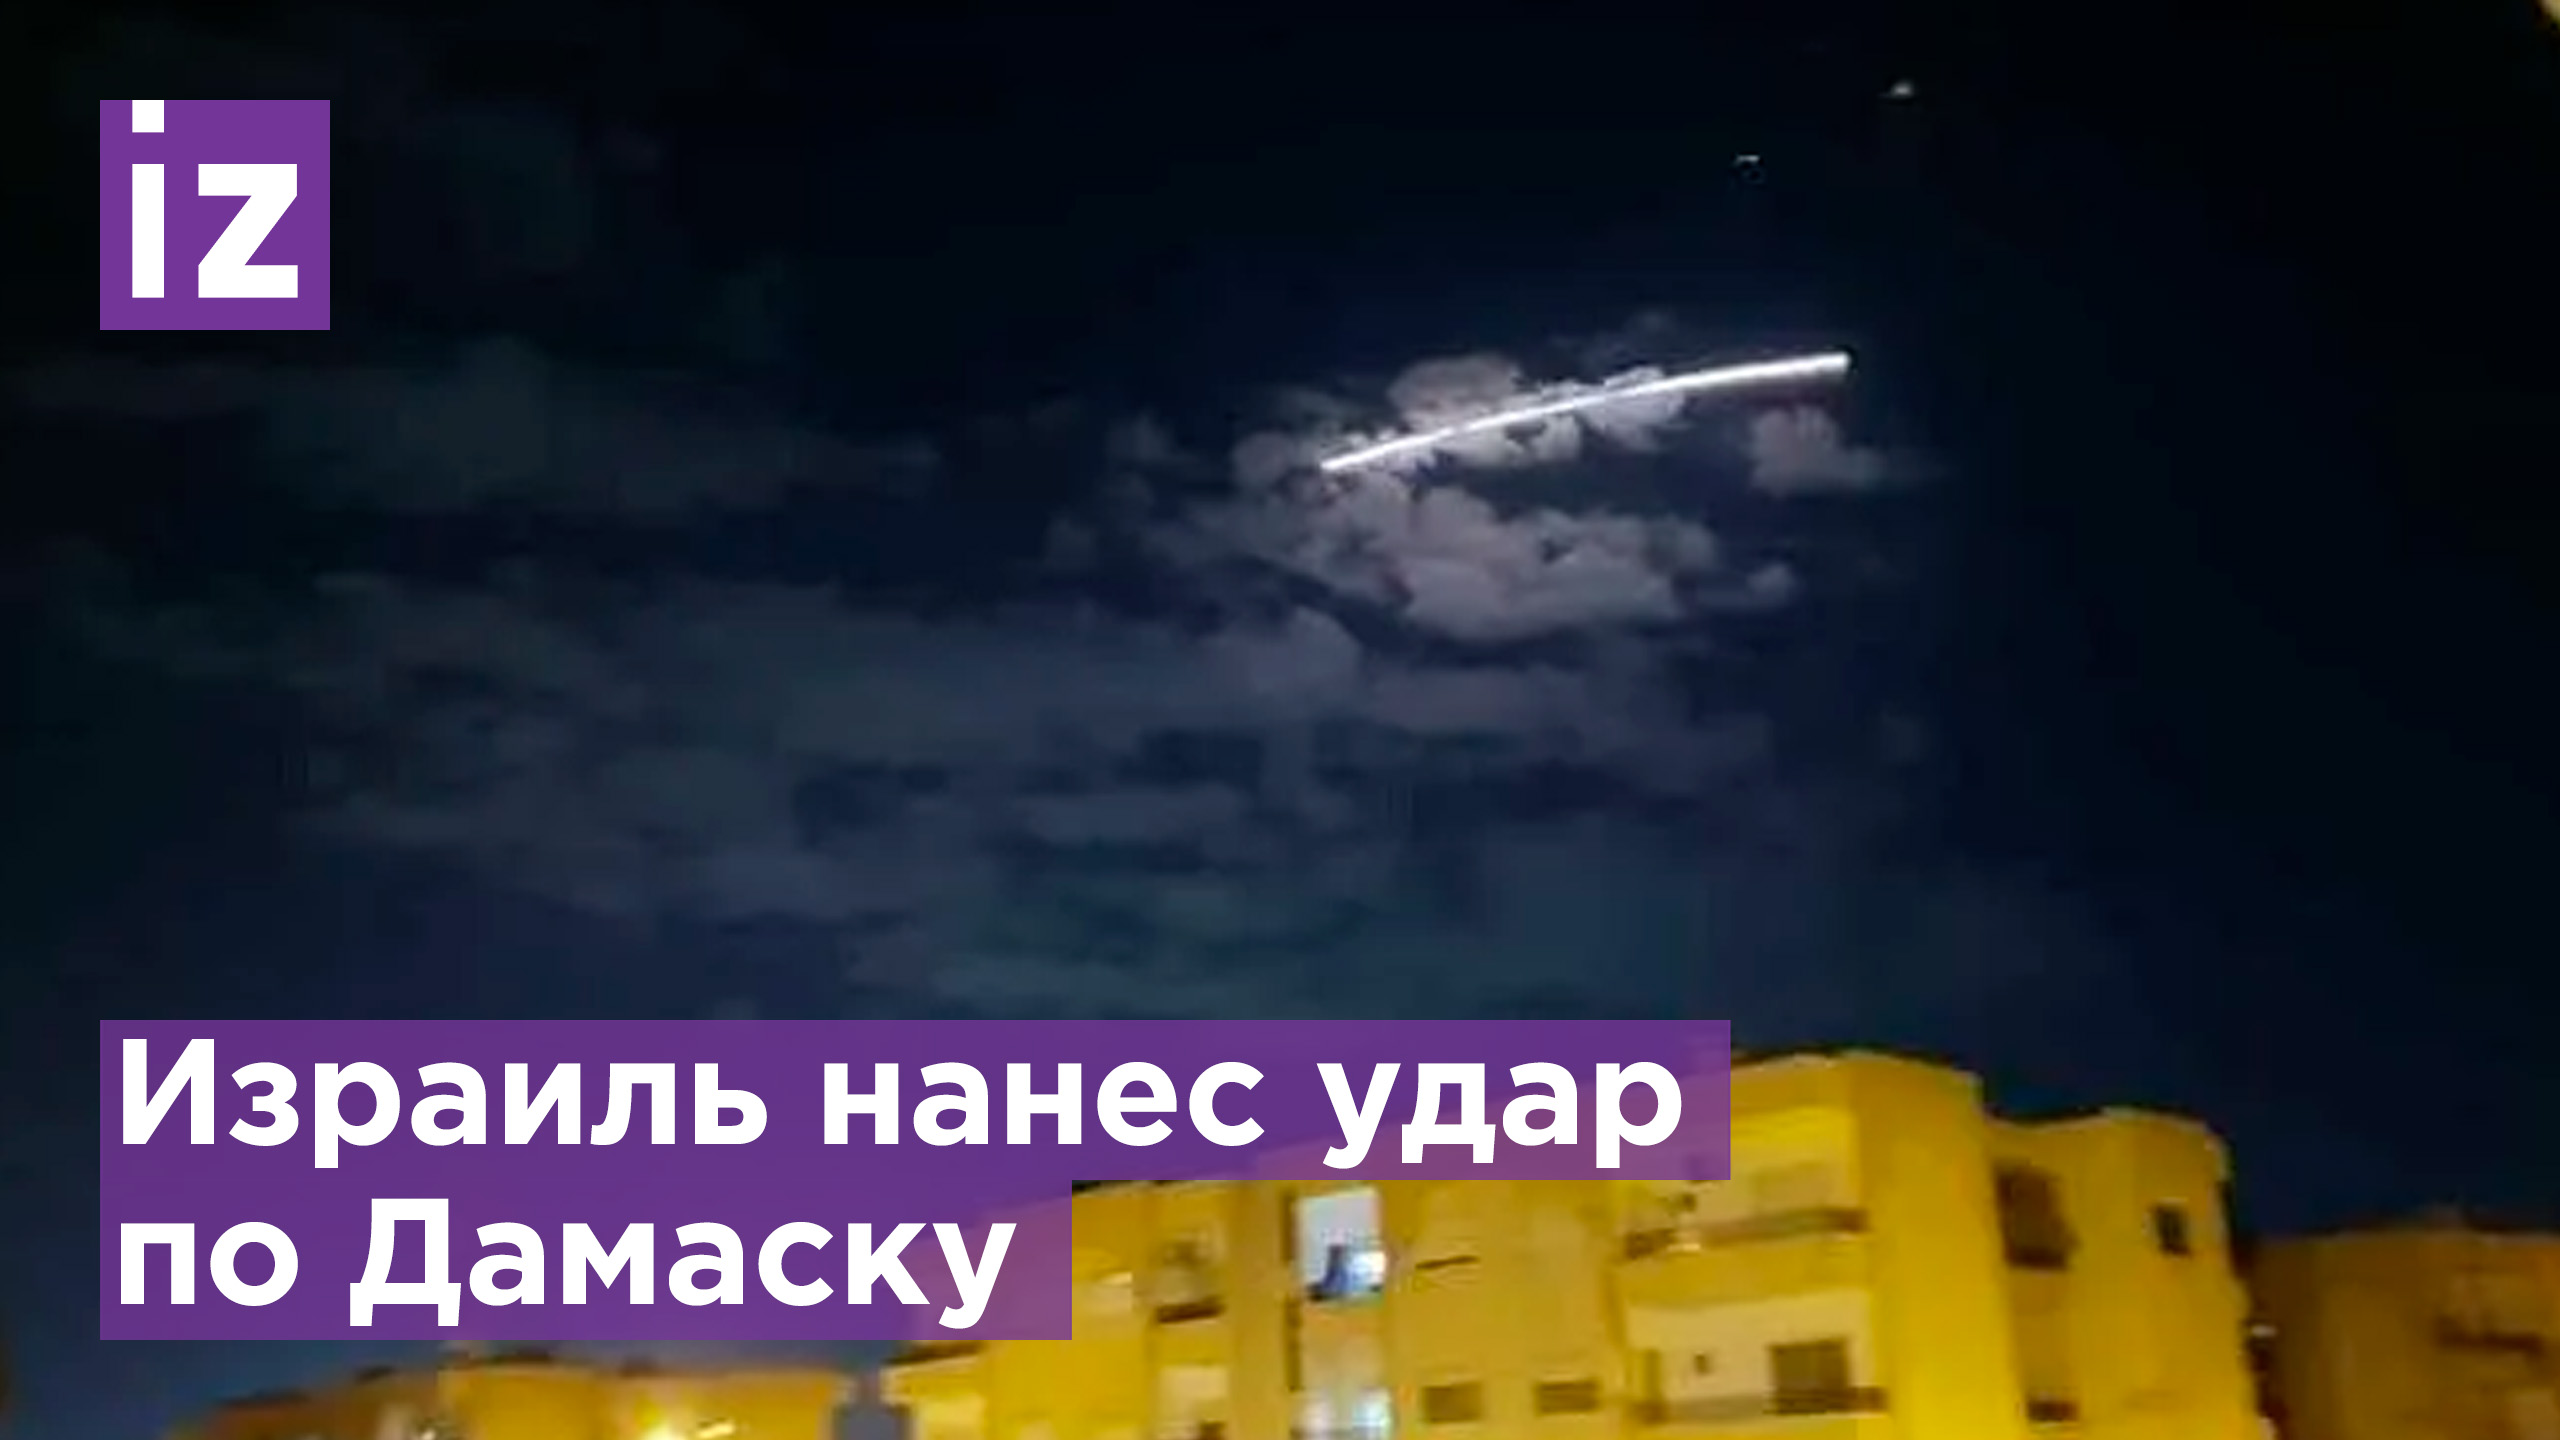 В Израиль нанес ракетный удар по Дамаску / Новости РЕН